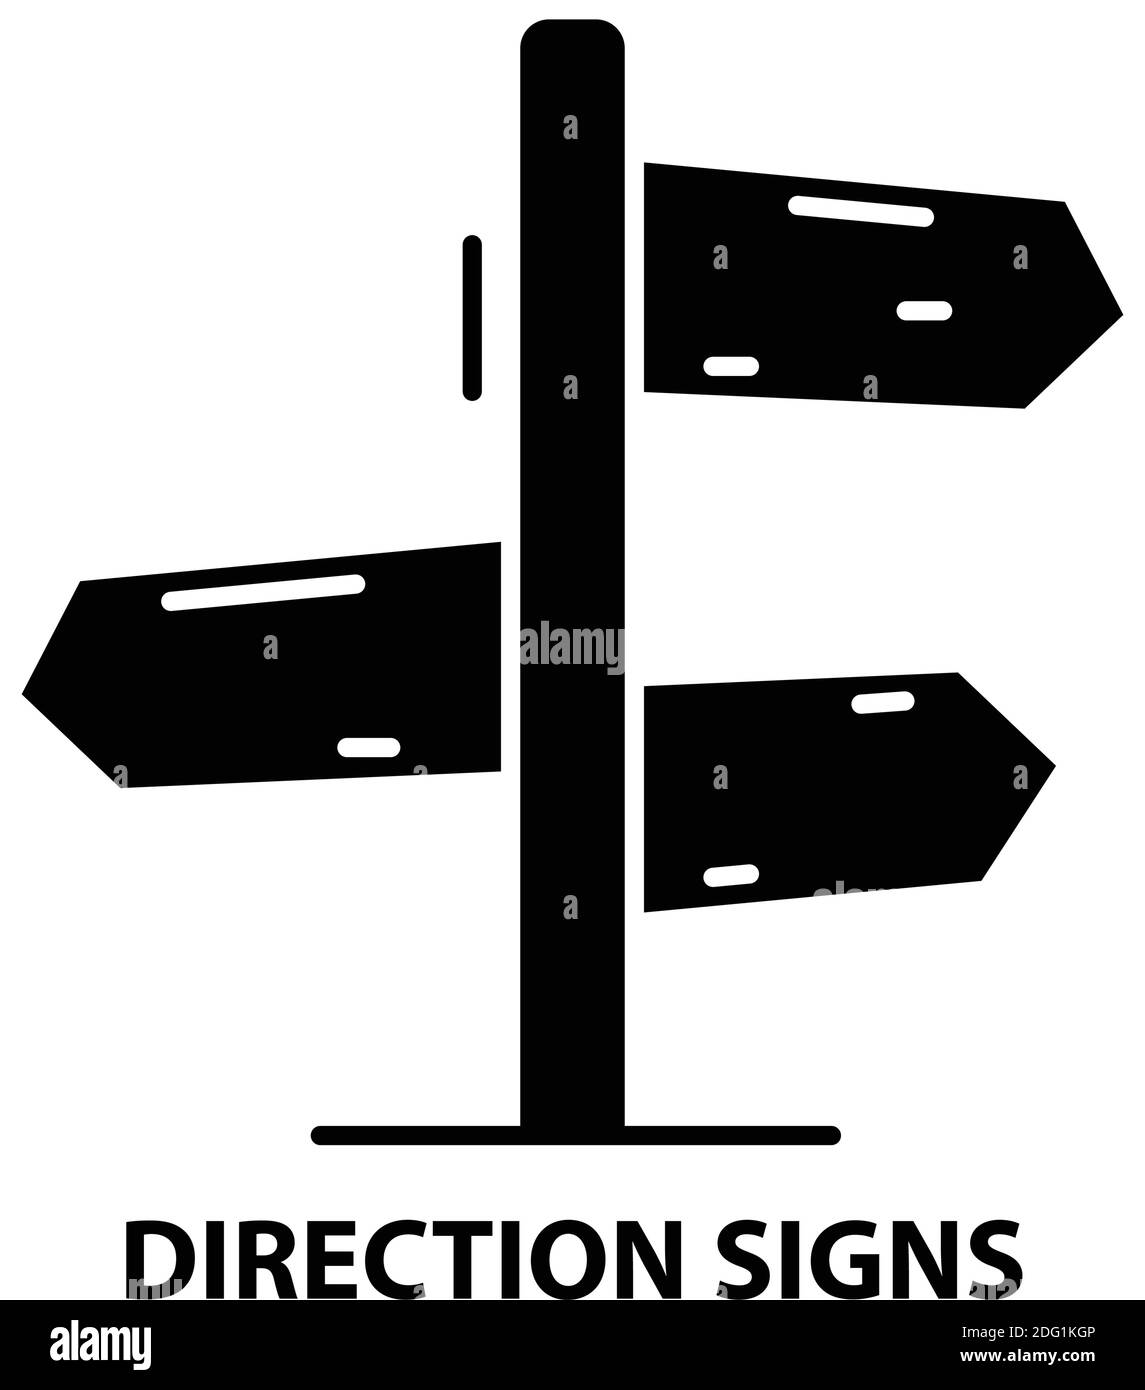 Symbol für Richtungszeichen, schwarzes Vektorzeichen mit editierbaren Konturen, Konzeptdarstellung Stock Vektor